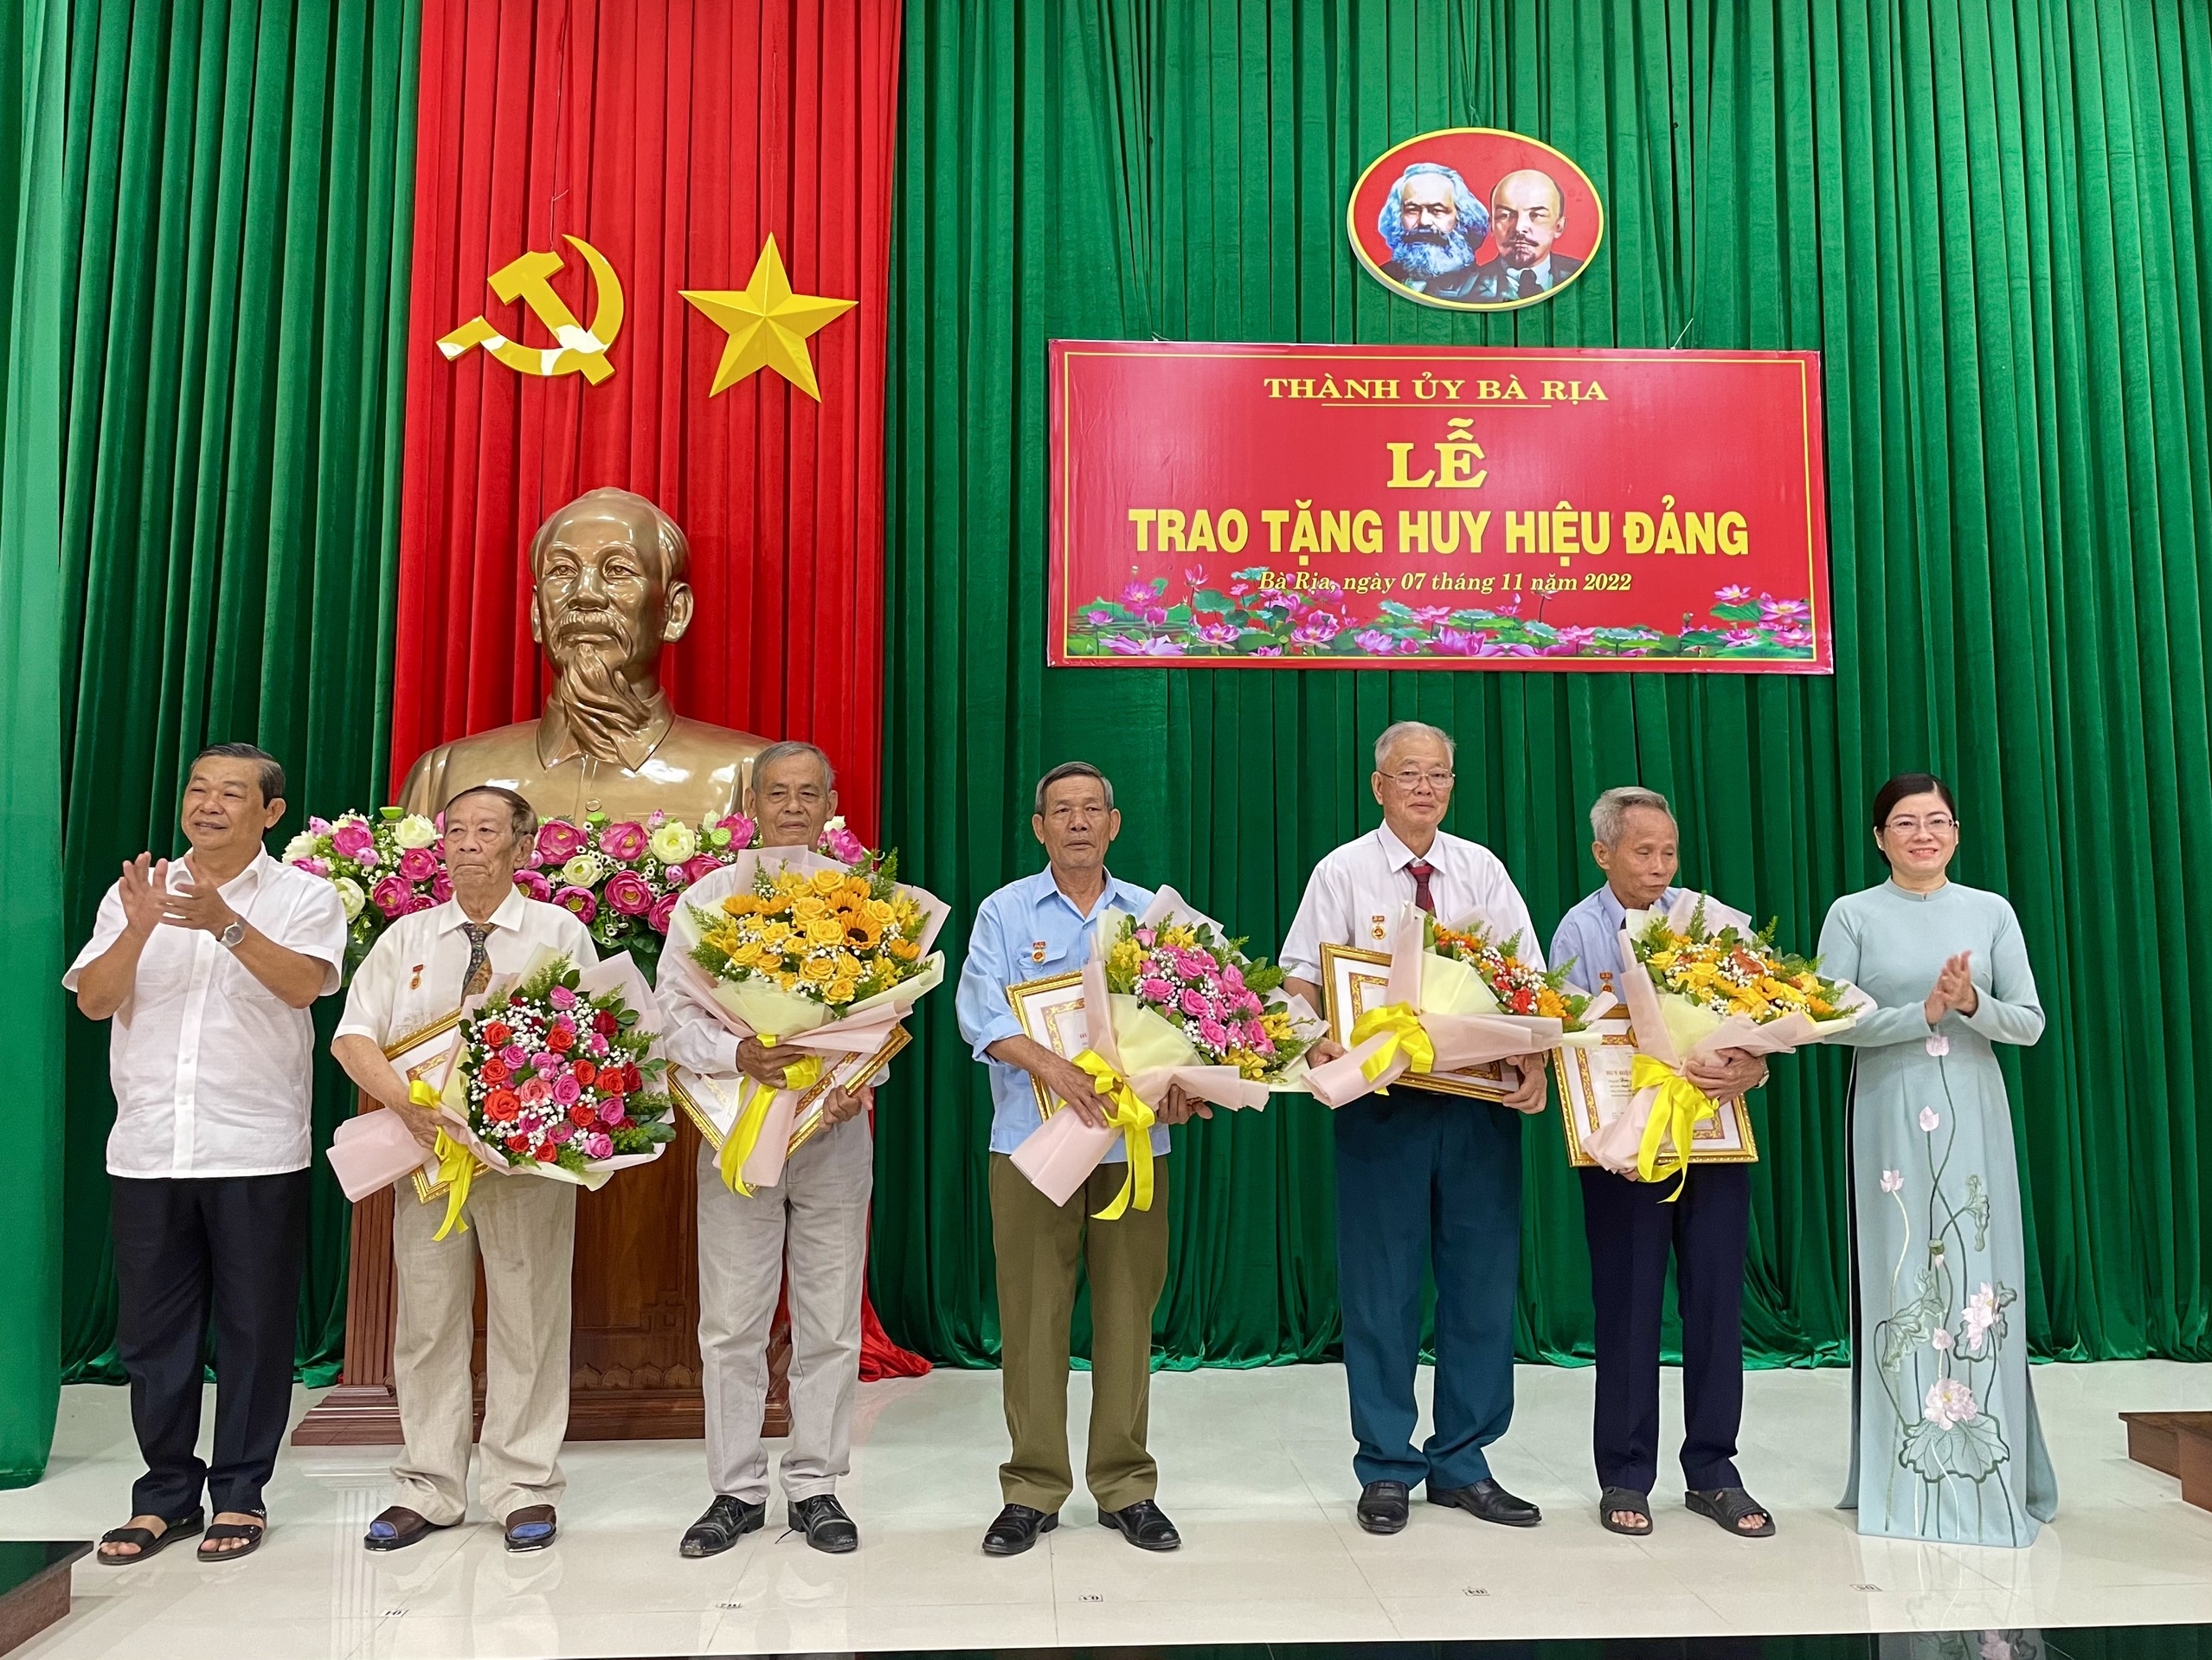 Bà Rịa Lê Thị Thủy, Phó Bí thư Thành ủy Bà Rịa trao Huy hiệu Đảng cho các đảng viên.